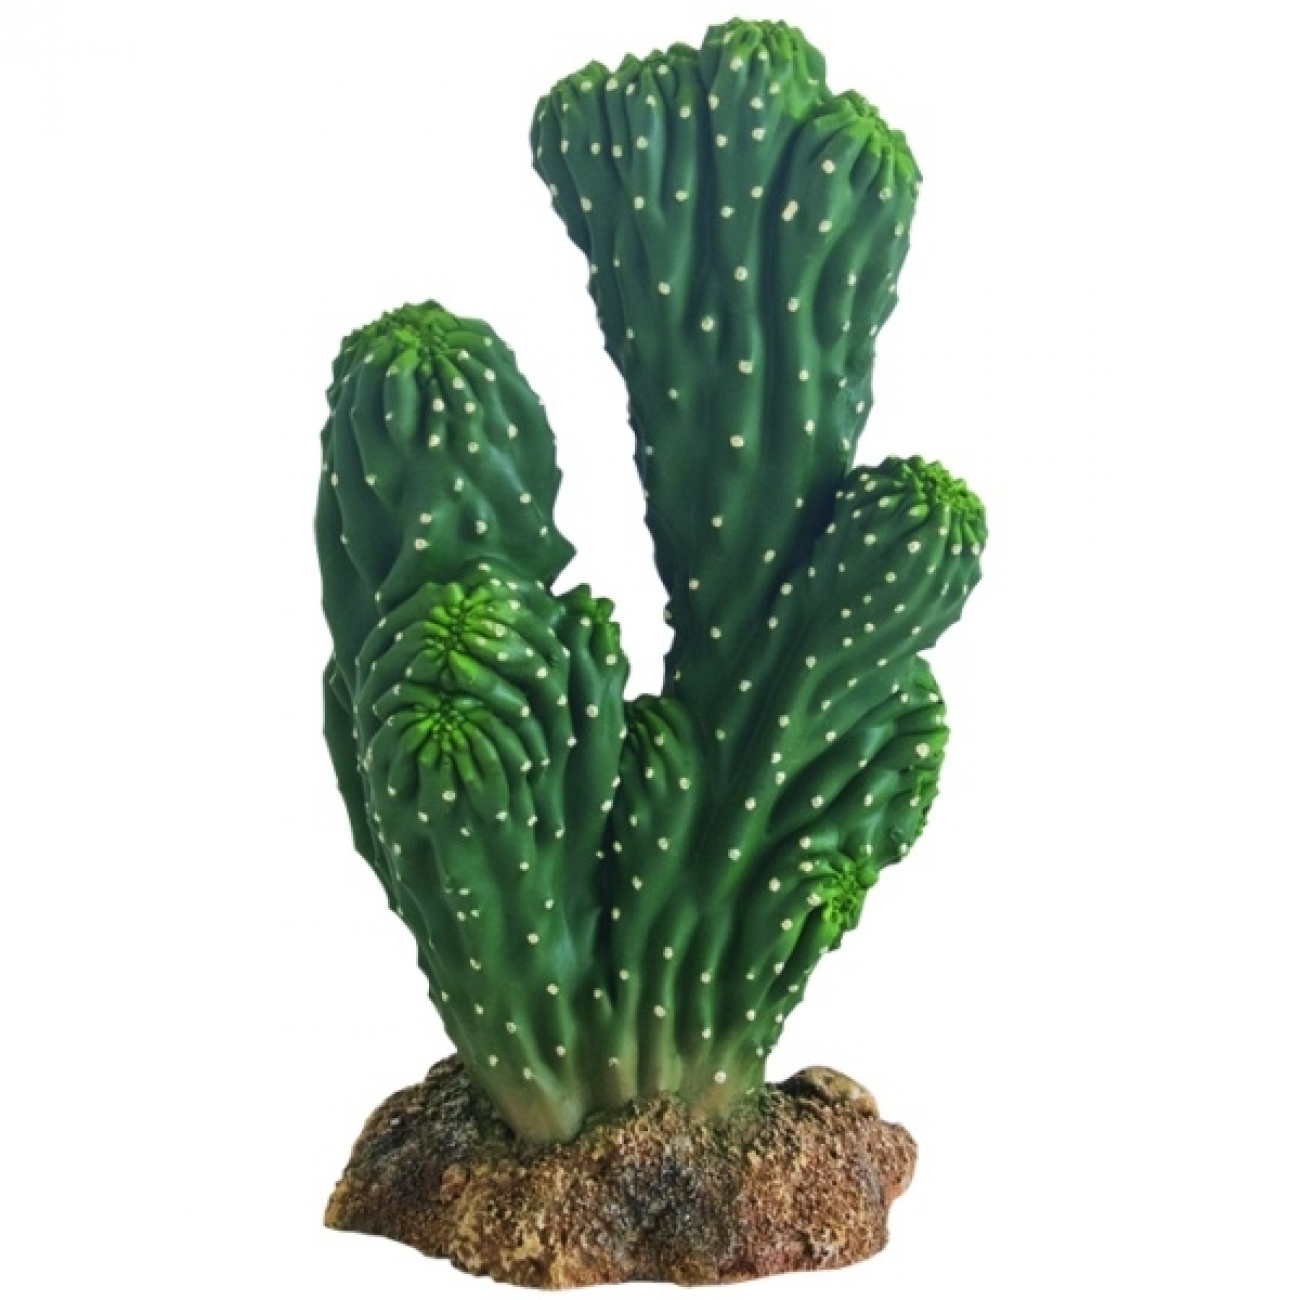 Kaktus Victoria, künstliche Pflanzen, Kunstpflanzen, Terrarium